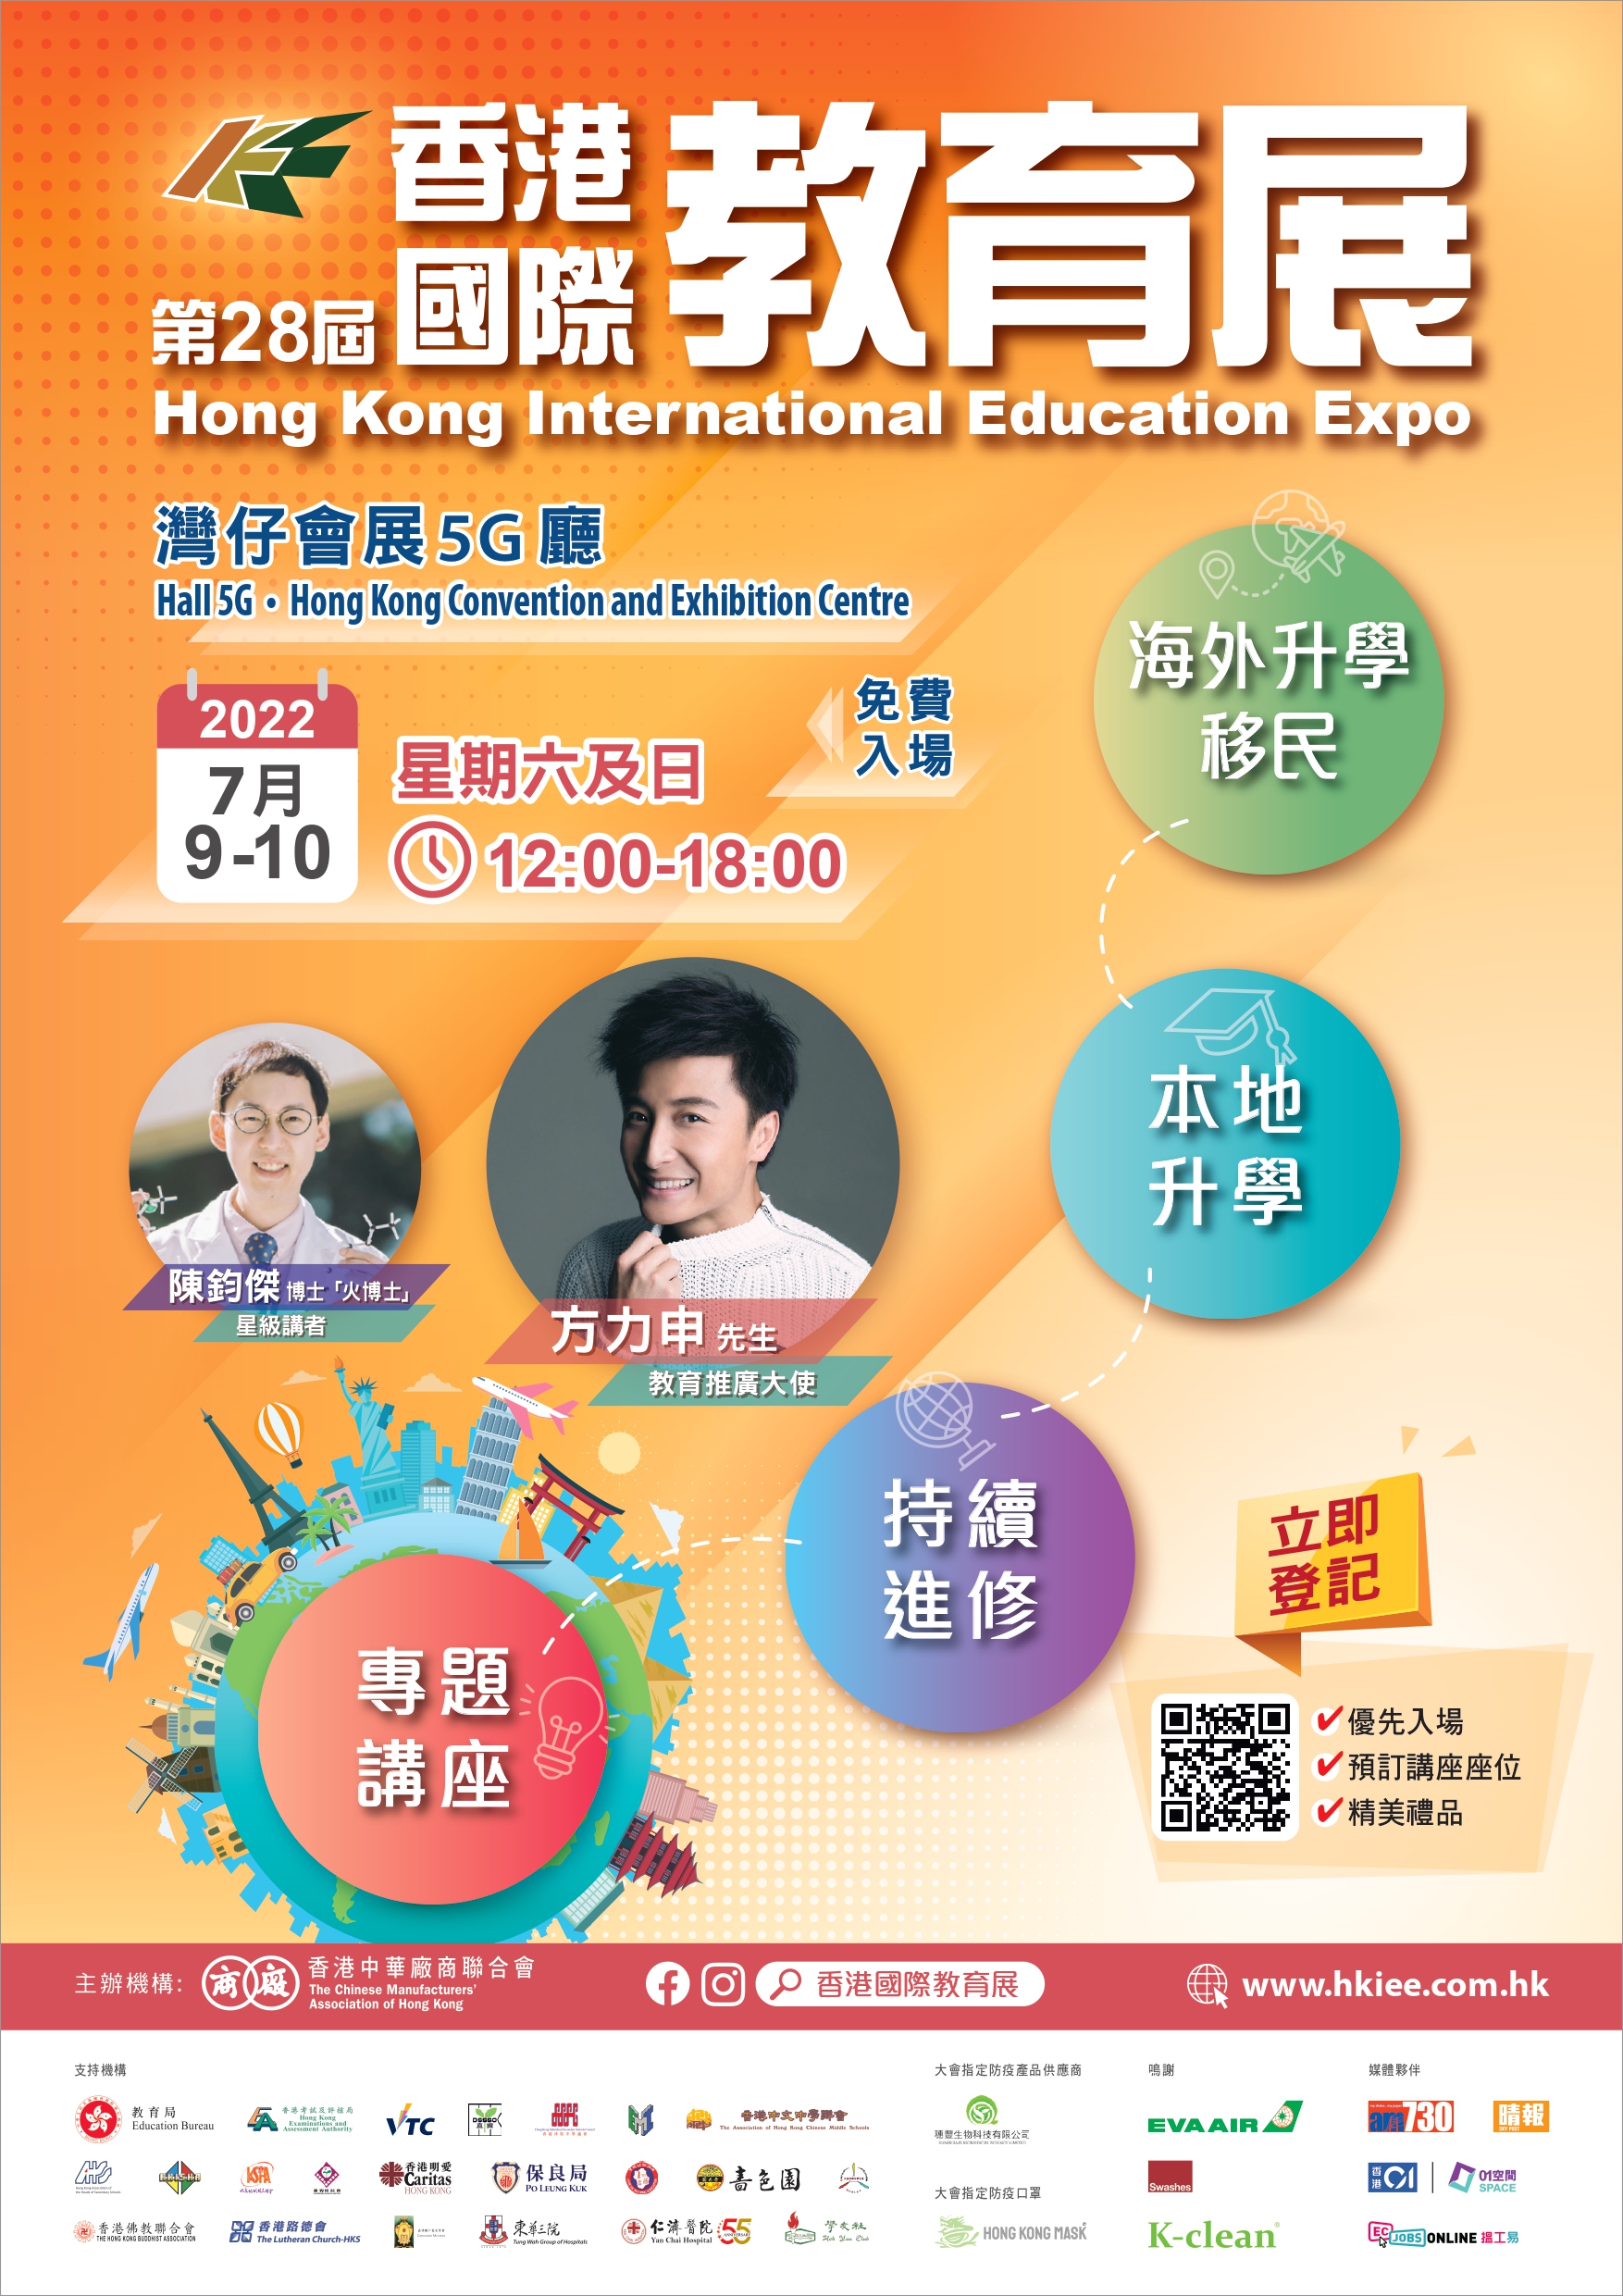 28th Hong Kong International Education Expo